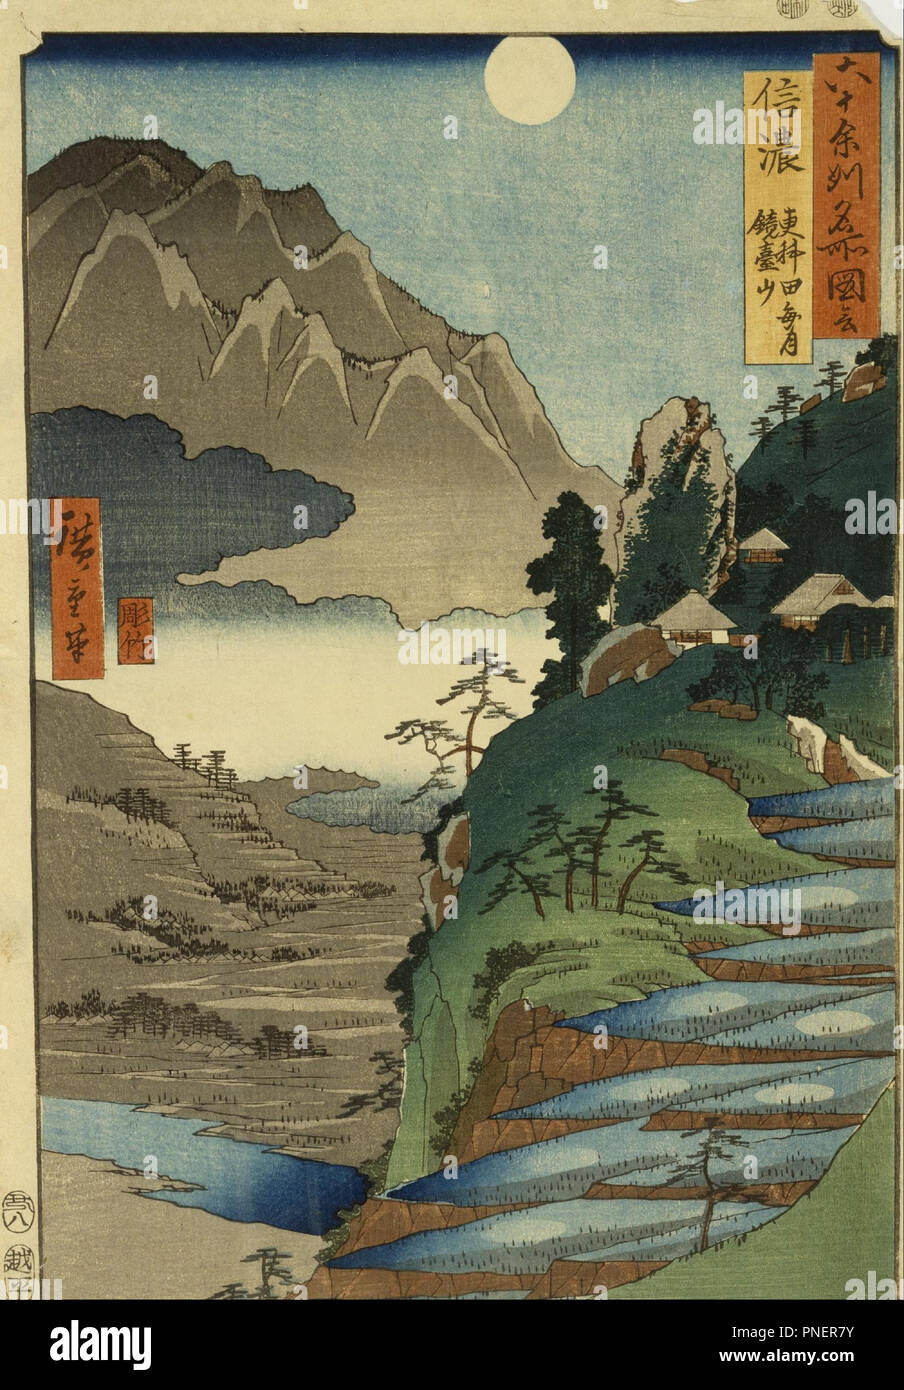 Mt. Kyodai und der Mond spiegelt sich in den Reisfeldern an Sarashina in der Provinz Shinano, Nr. 25. Datum/Zeitraum: 1853/1858. Holzschnitt. Breite: 24,1 cm. Höhe: 34,8 cm (Blatt). Autor: Ando Hiroshige. Stockfoto